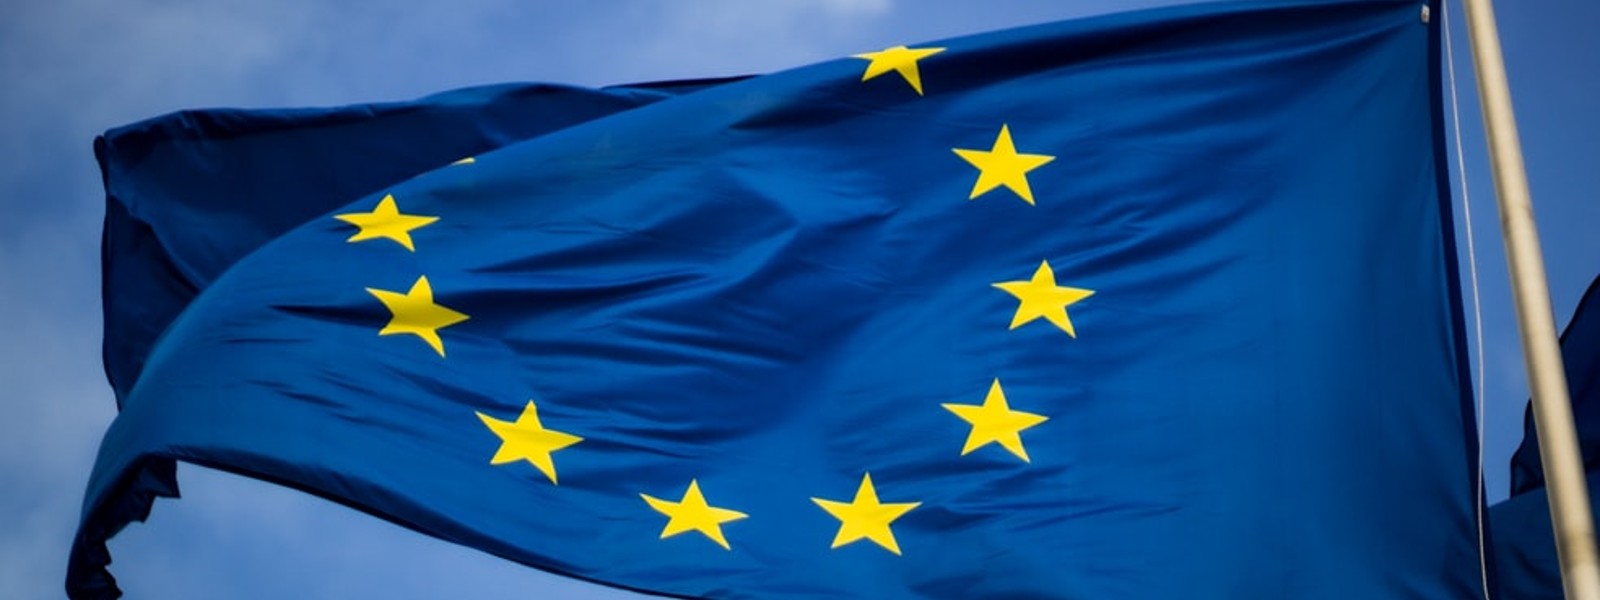 EU envoy voices concern over lack of FTAs